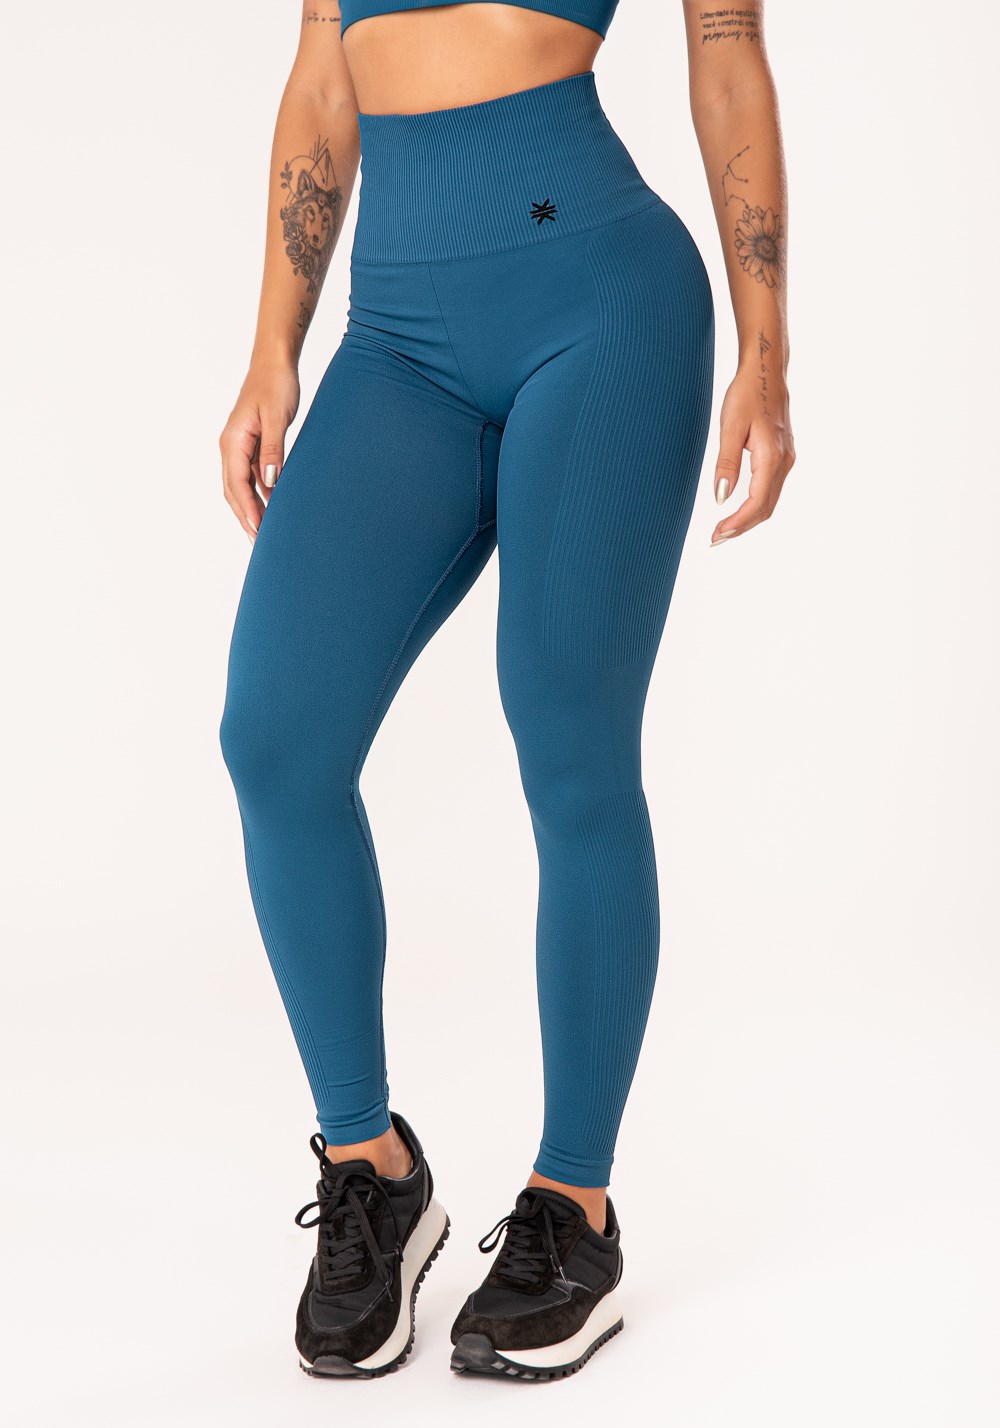 Legging fitness feminina azul petróleo com recorte canelado seamless